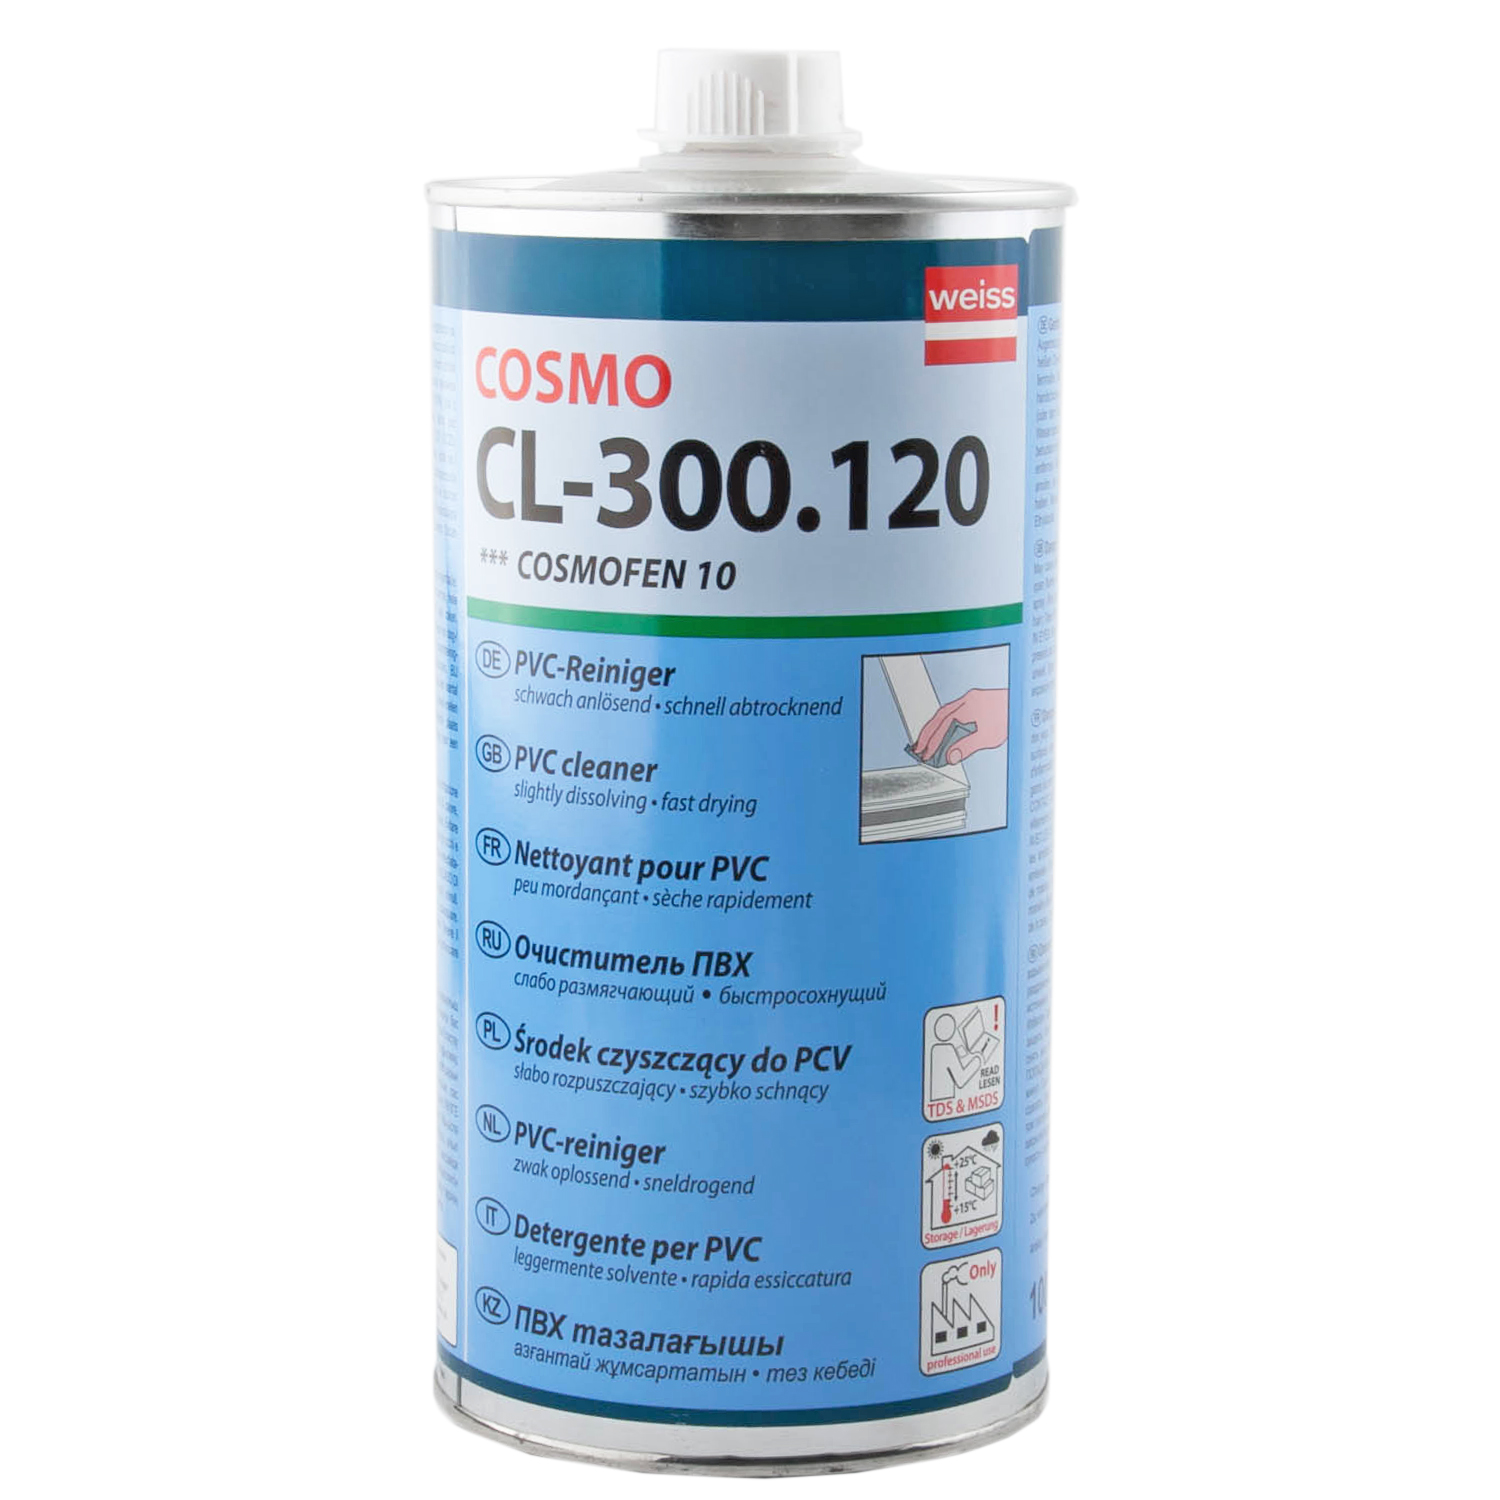 Просто для очистки. Очиститель Cosmofen 20 (Cosmo CL-300.140) 1 литр. Cosmofen 10 1l CL-300.120. Cosmo CL-300.120. Космофен растворитель для пластиковых окон.